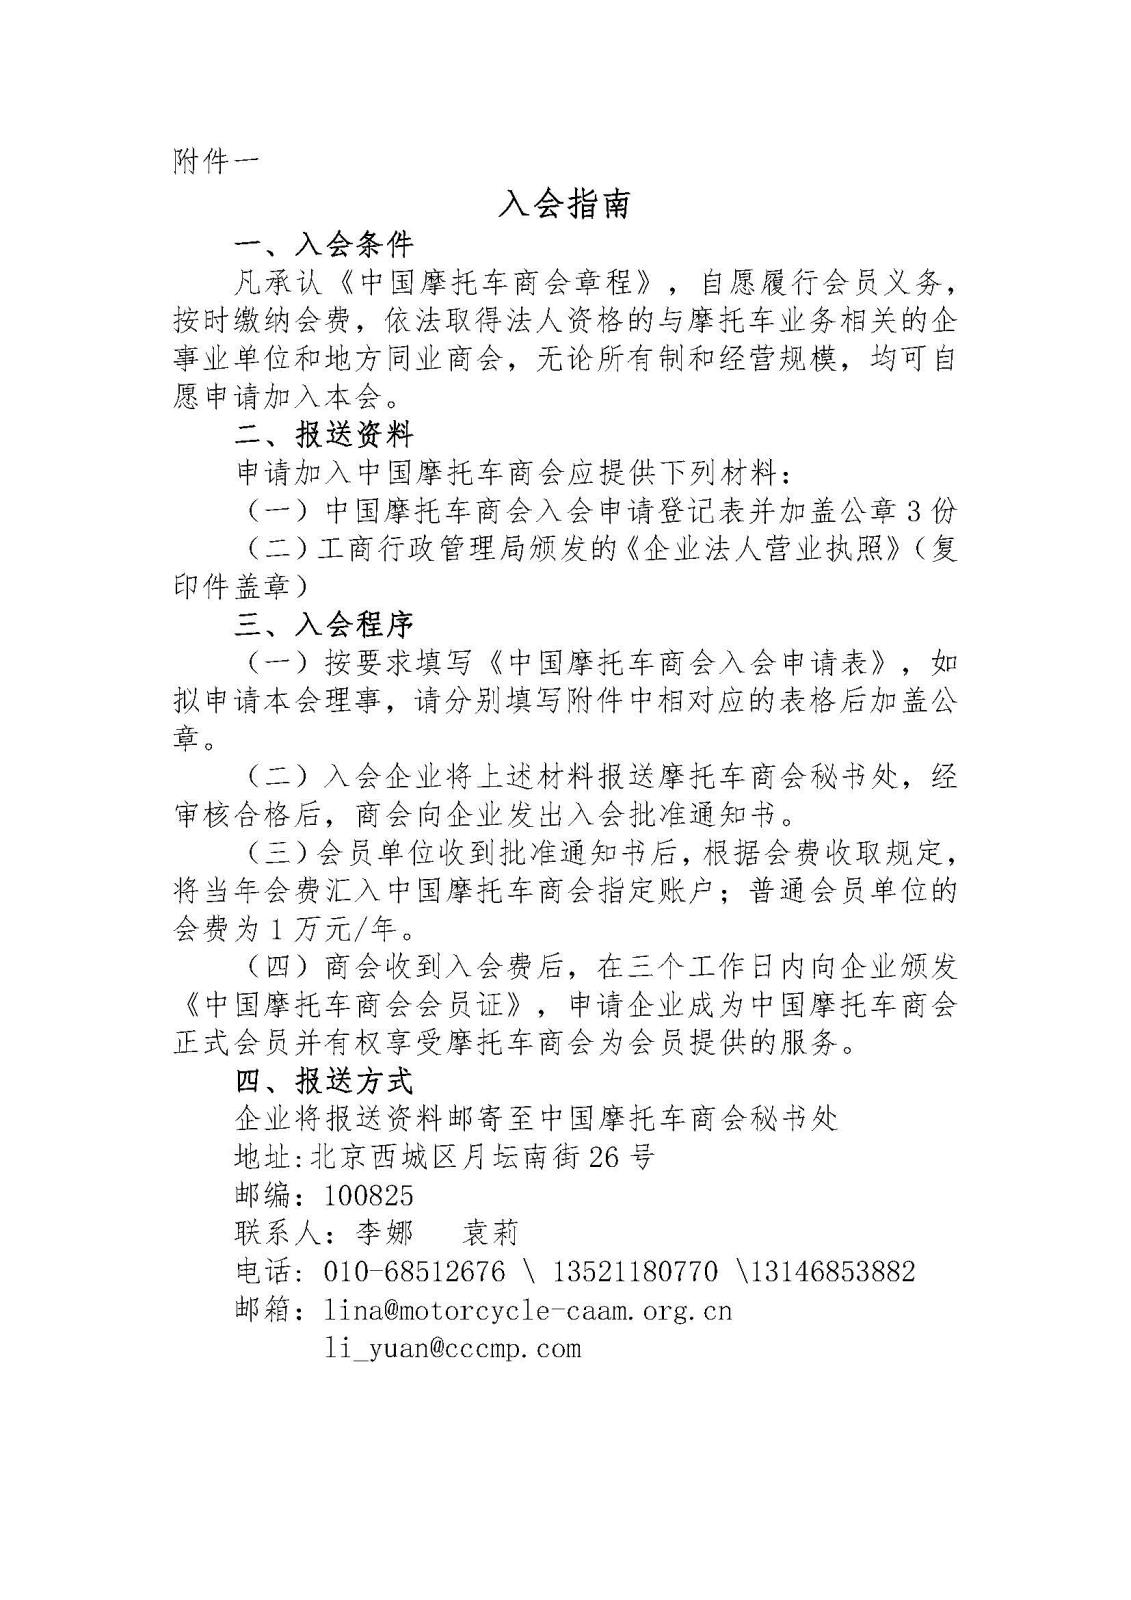 中国摩托车商会入会邀请函_Page_3.jpg